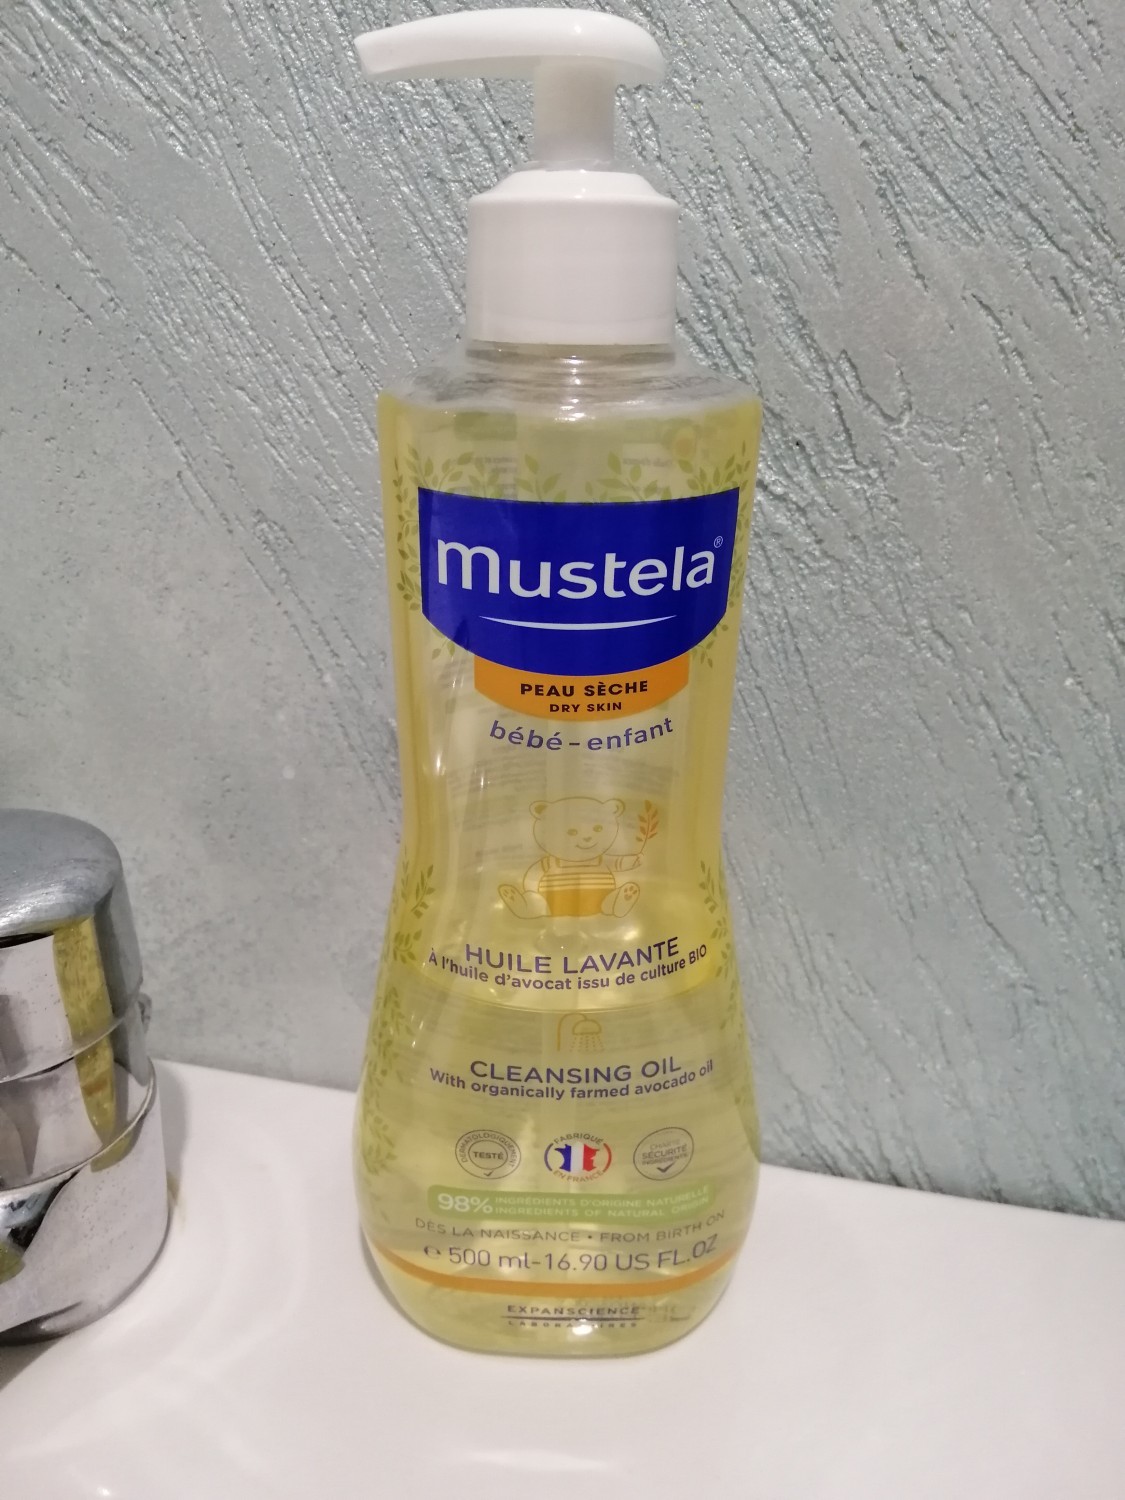 Mustela oil